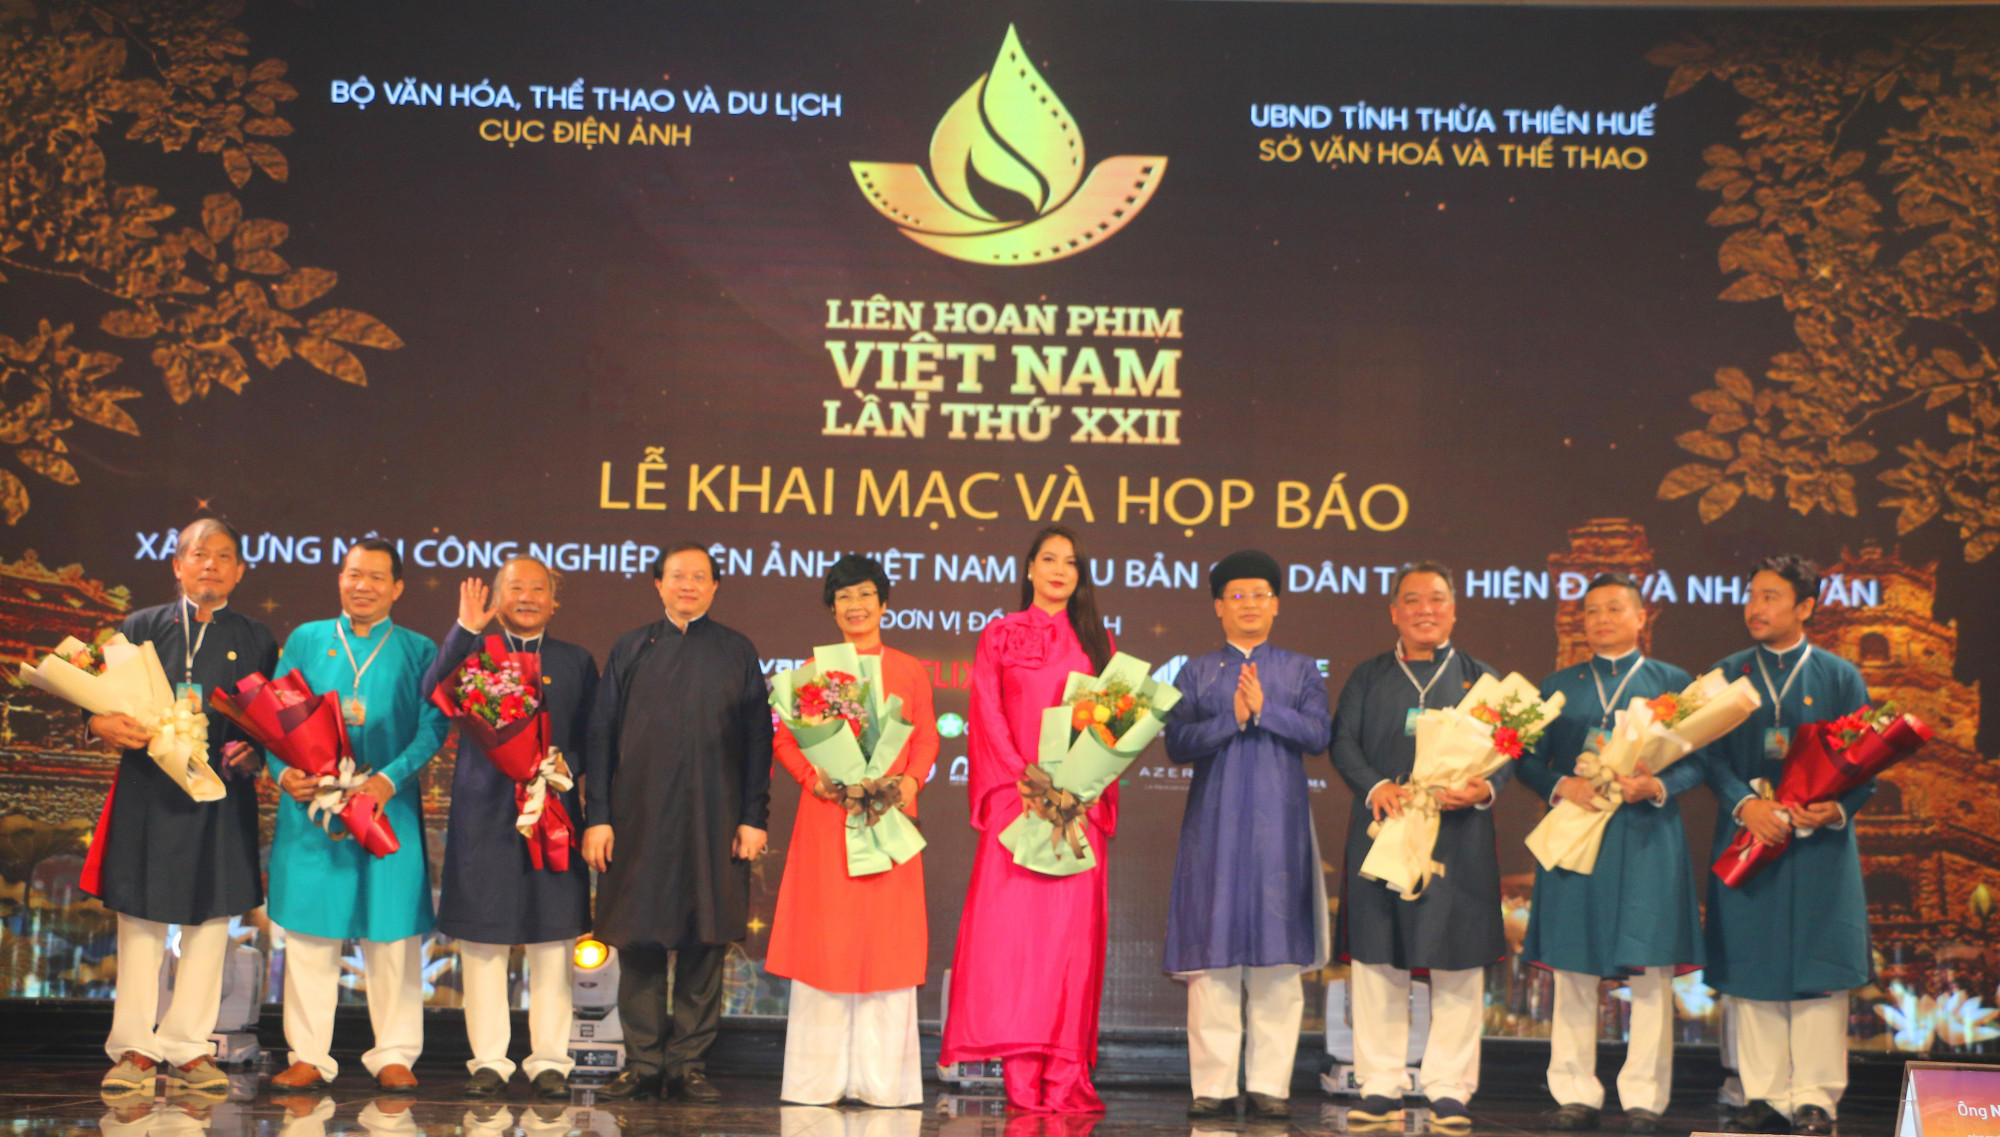 Liên hoan phim quy tụ nhiều diễn viên, đạo diễn và nghệ sĩ nổi tiếng của Việt Nam